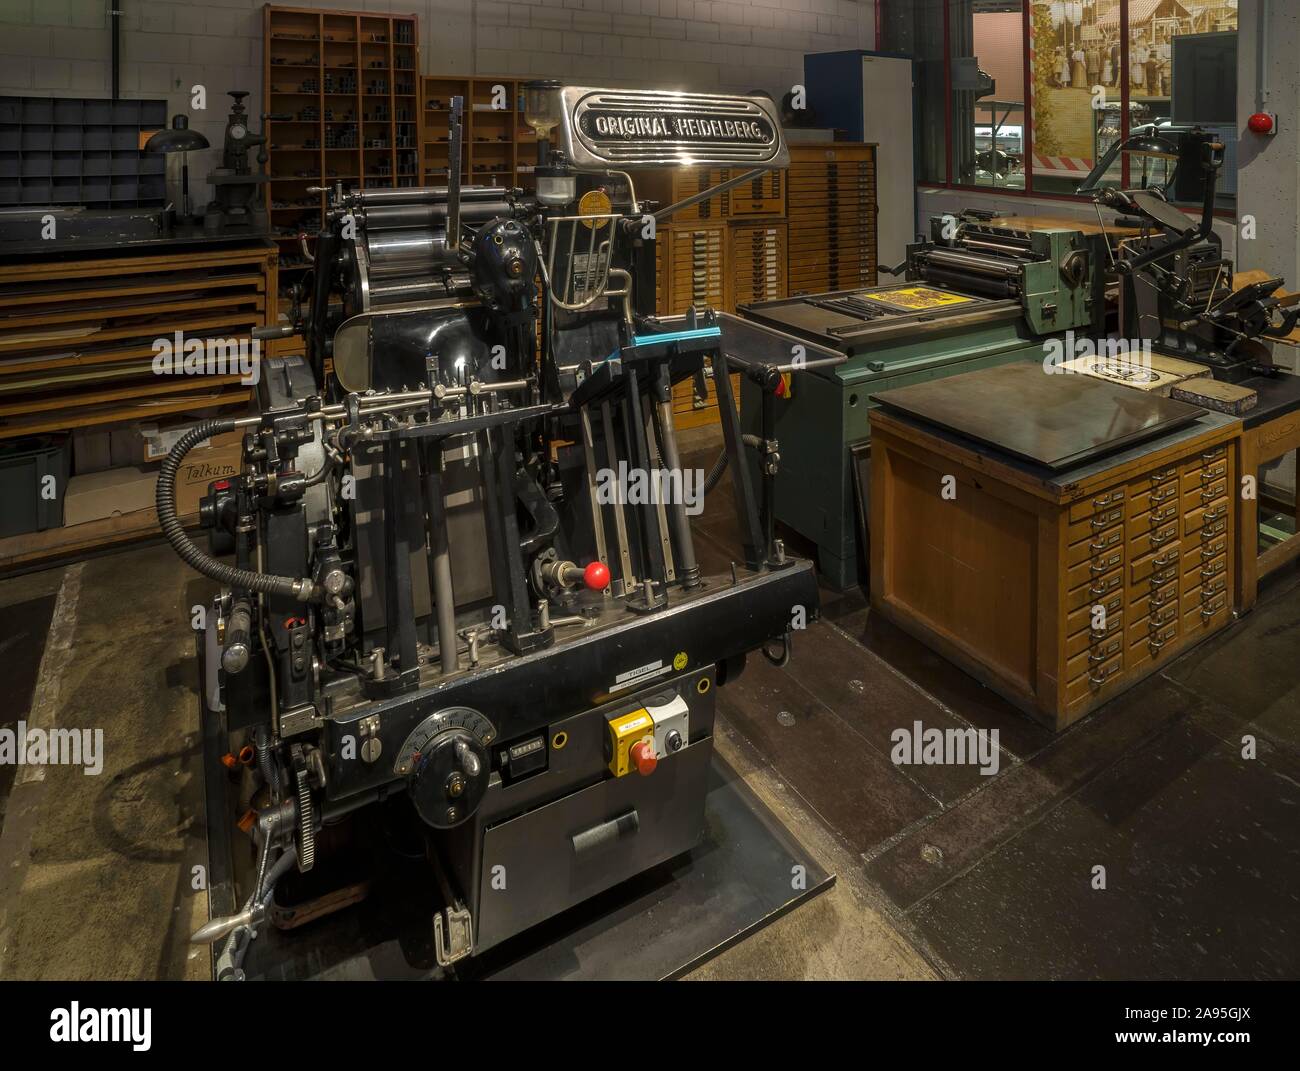 Máquina de impresión Heidelberg históricos originales desde 1950, el Museo de la cultura industrial, Nuremberg, Middle Franconia, Baviera, Alemania Foto de stock